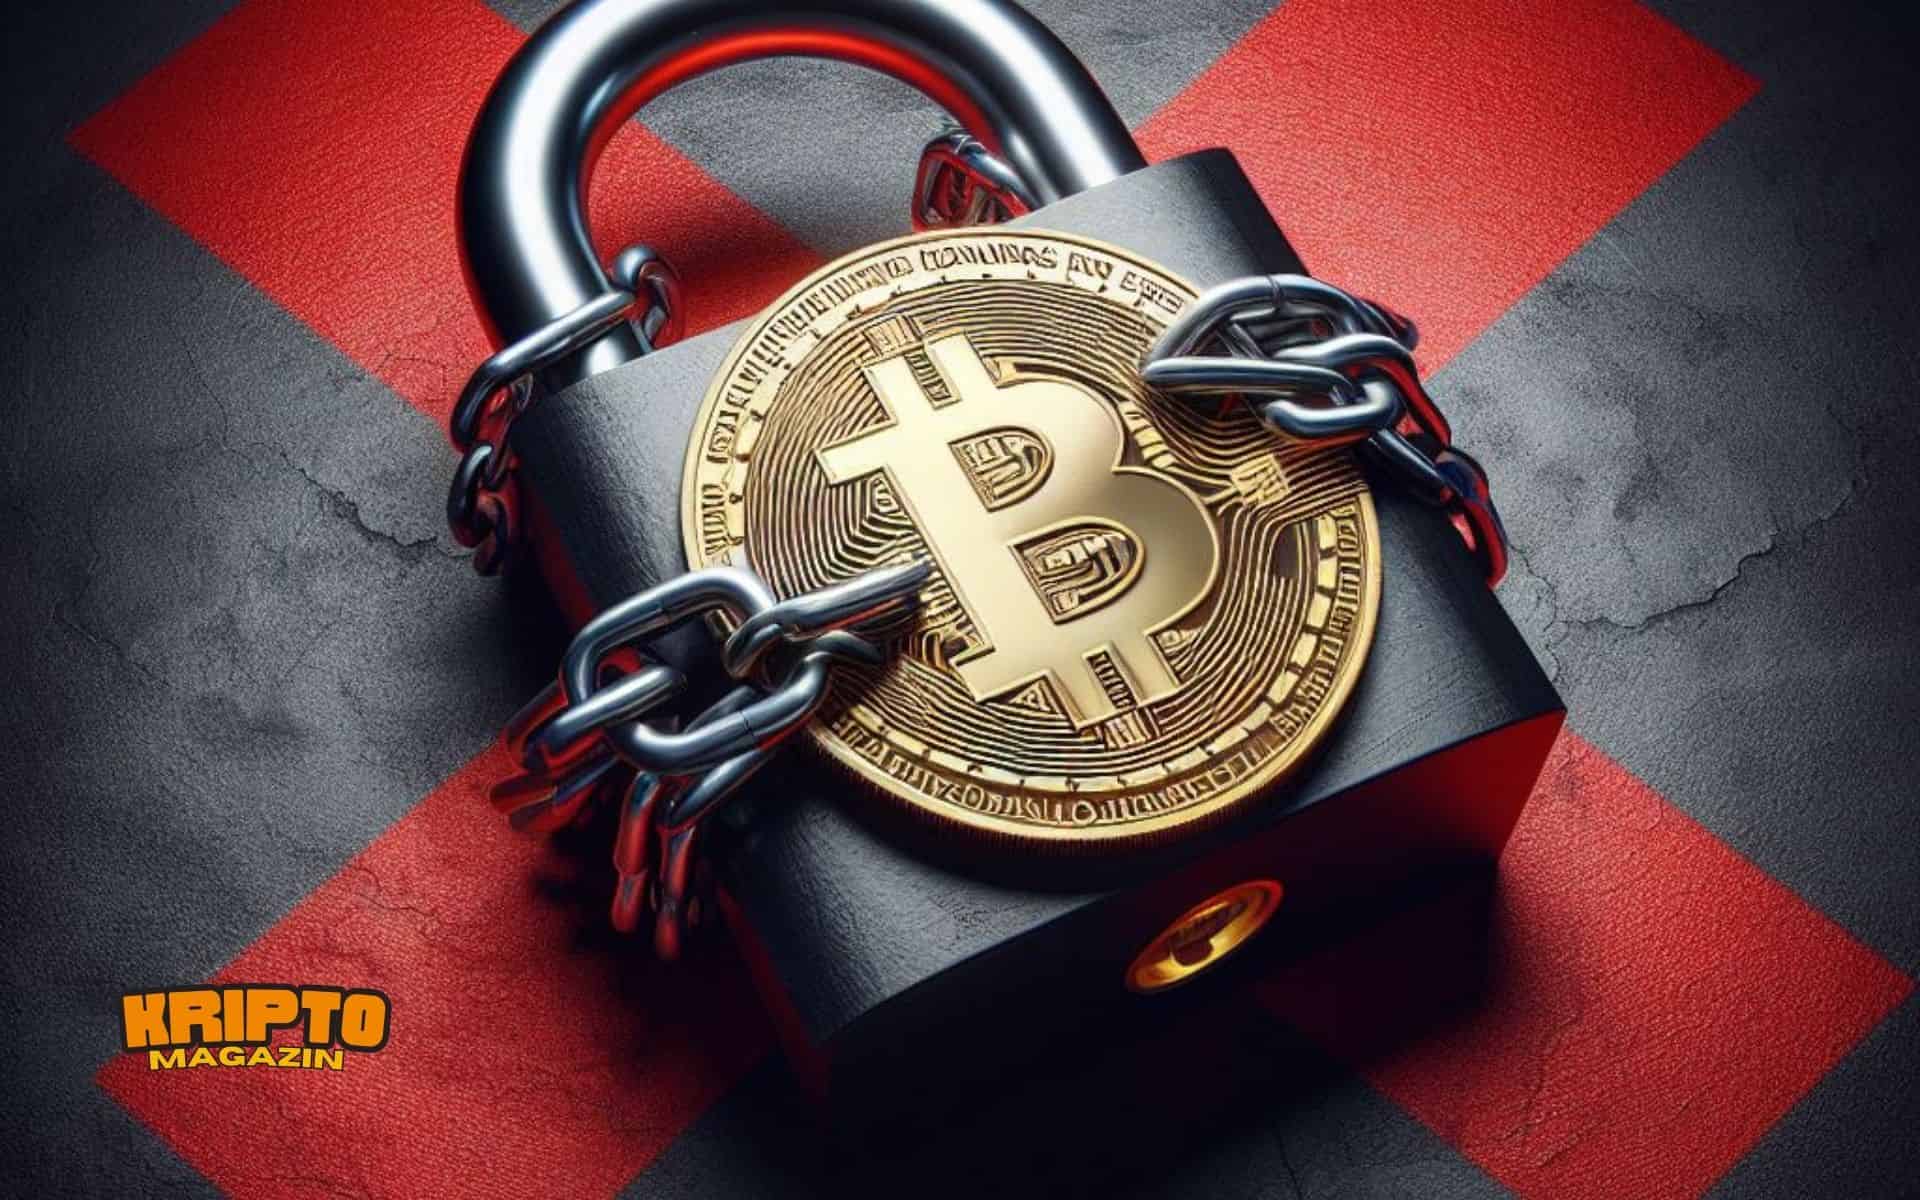 Kriptomagazin honduras bitcoin ban